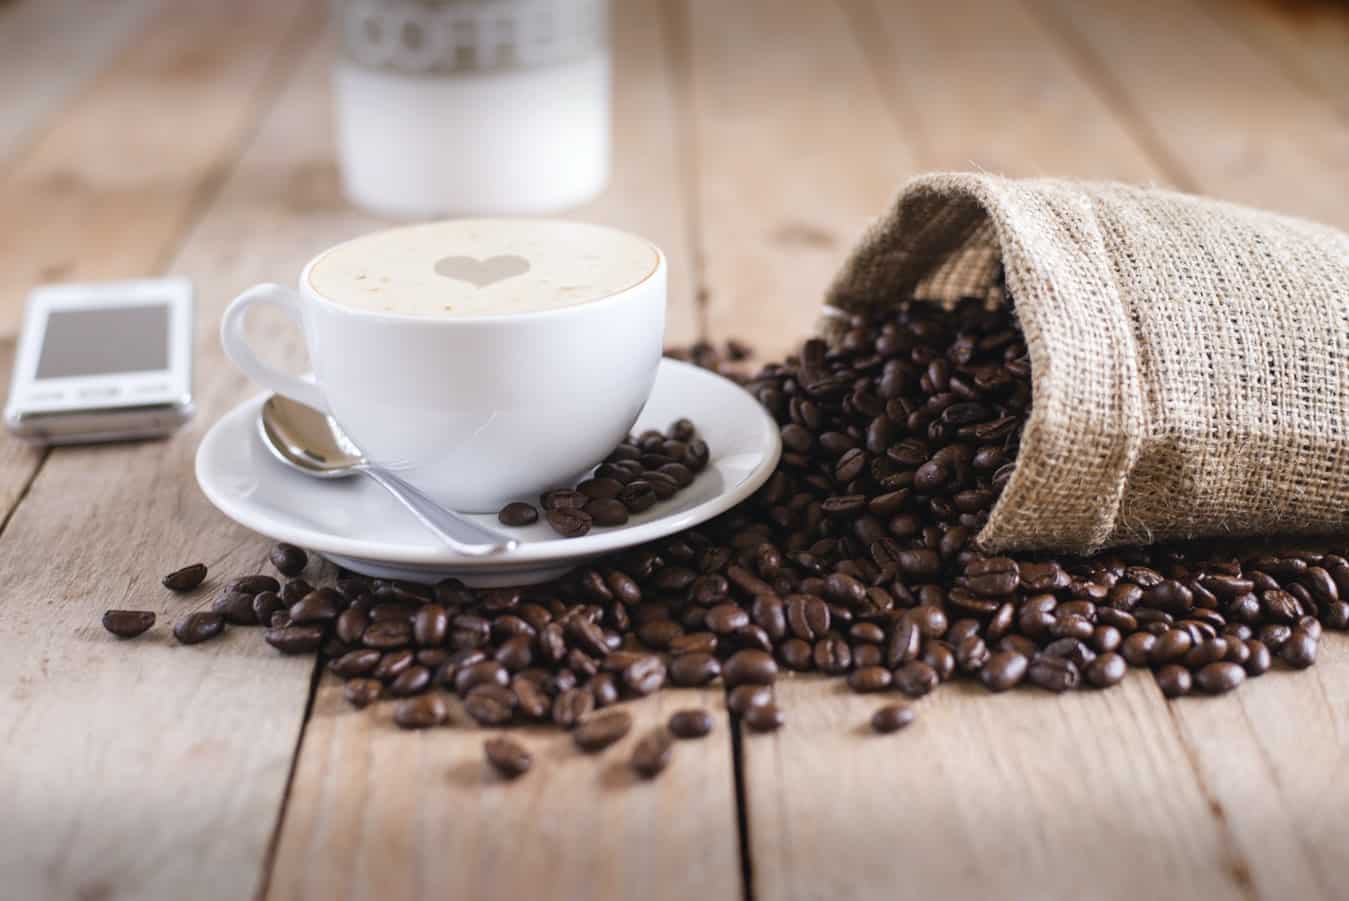  Cómo hacer café: 6 pasos para una preparación ideal en casa